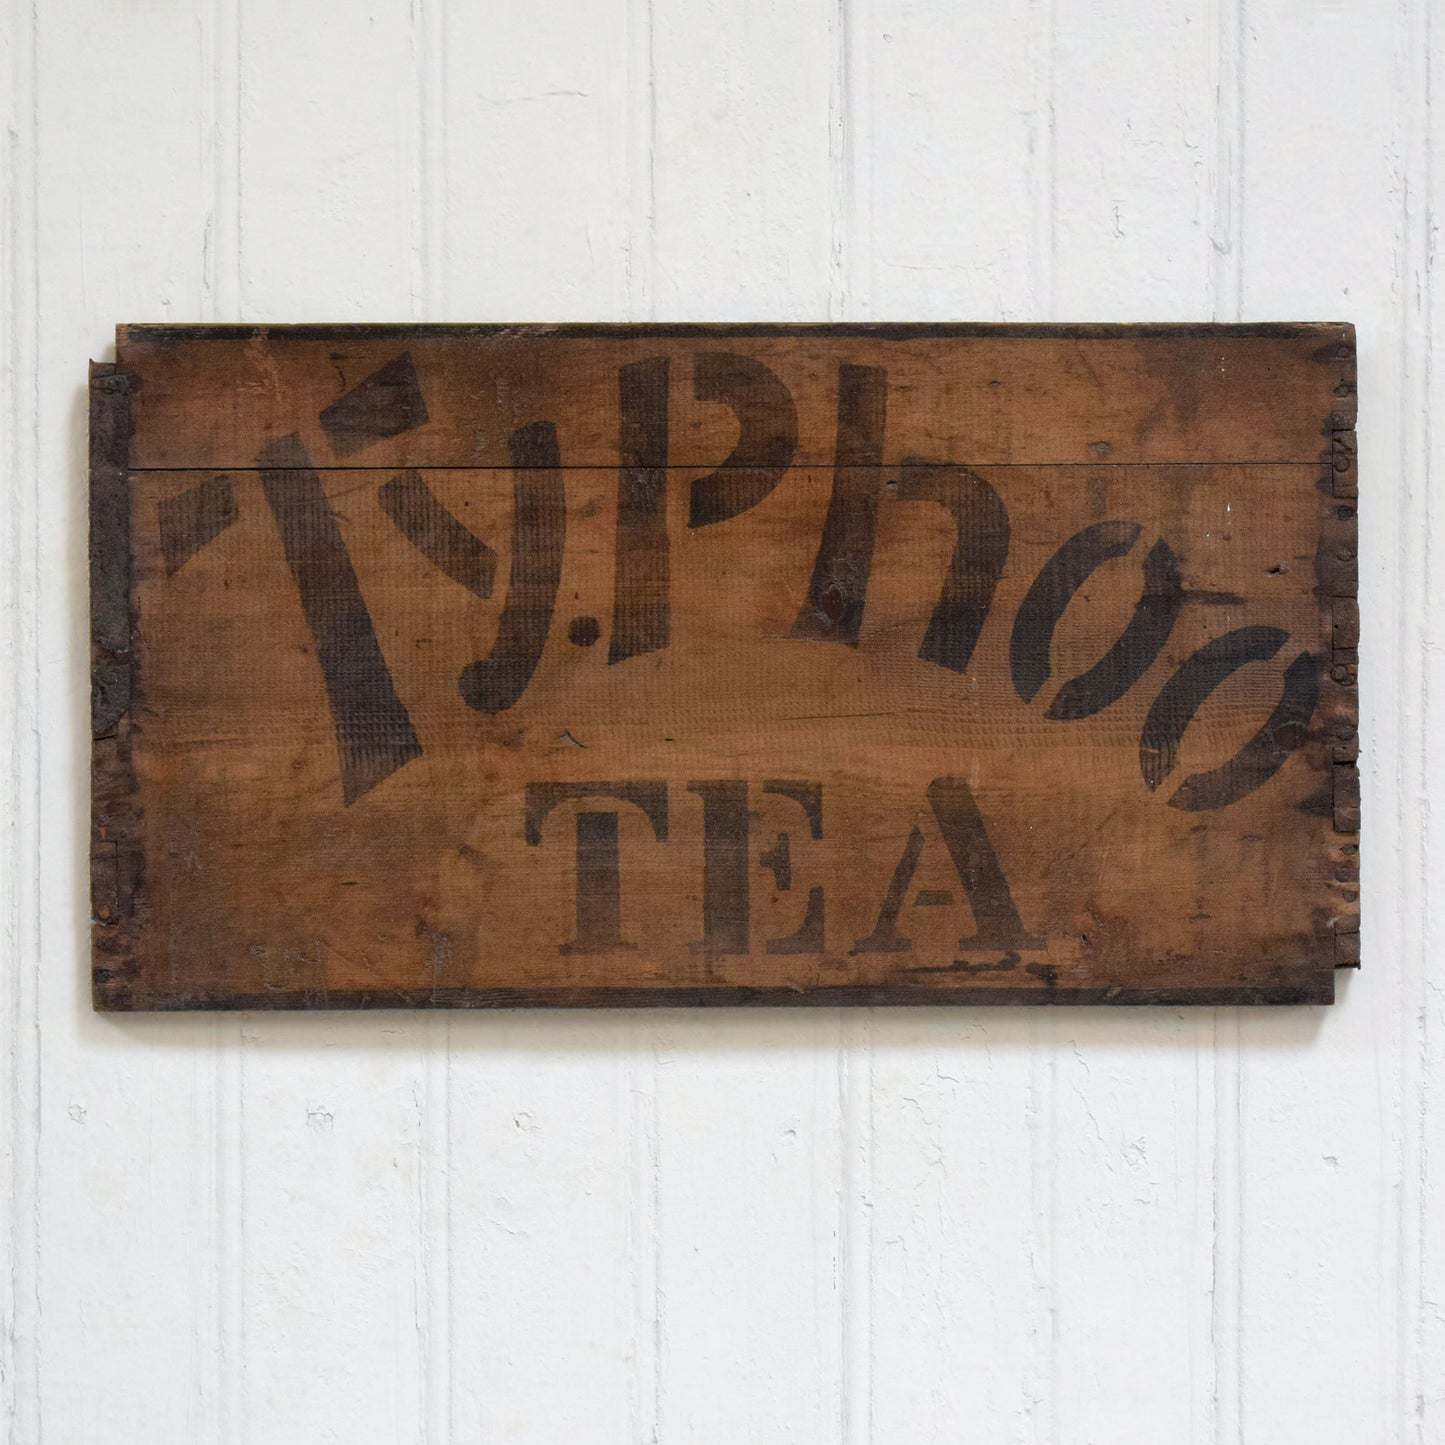 Vintage Typhoo Tea Box Panel Advertising Sign